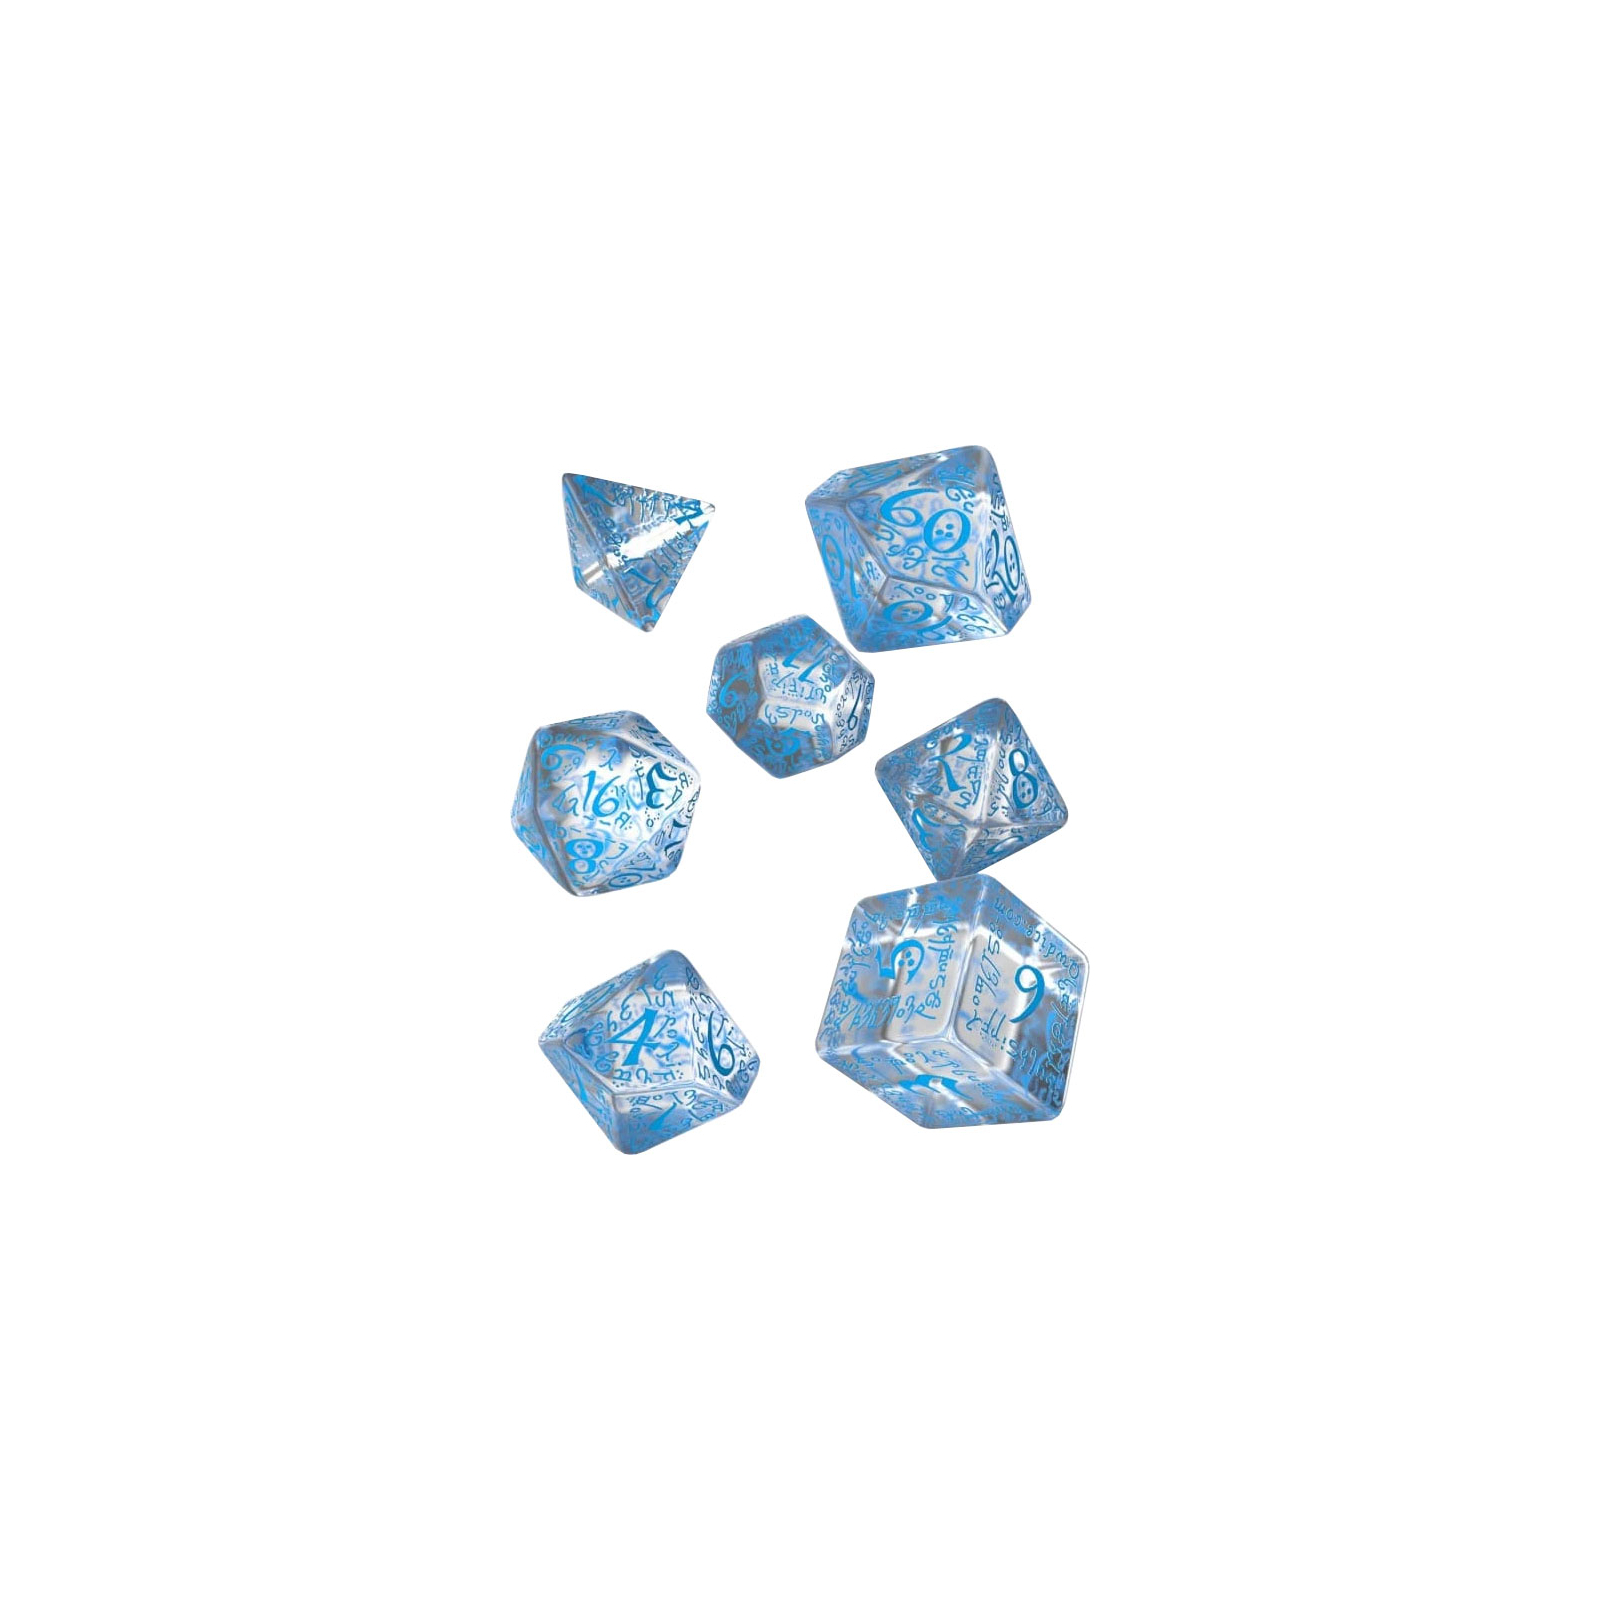 Набор кубиков для настольных игр Q-Workshop Elvish Translucent blue Dice Set (7 шт) (SELV11)